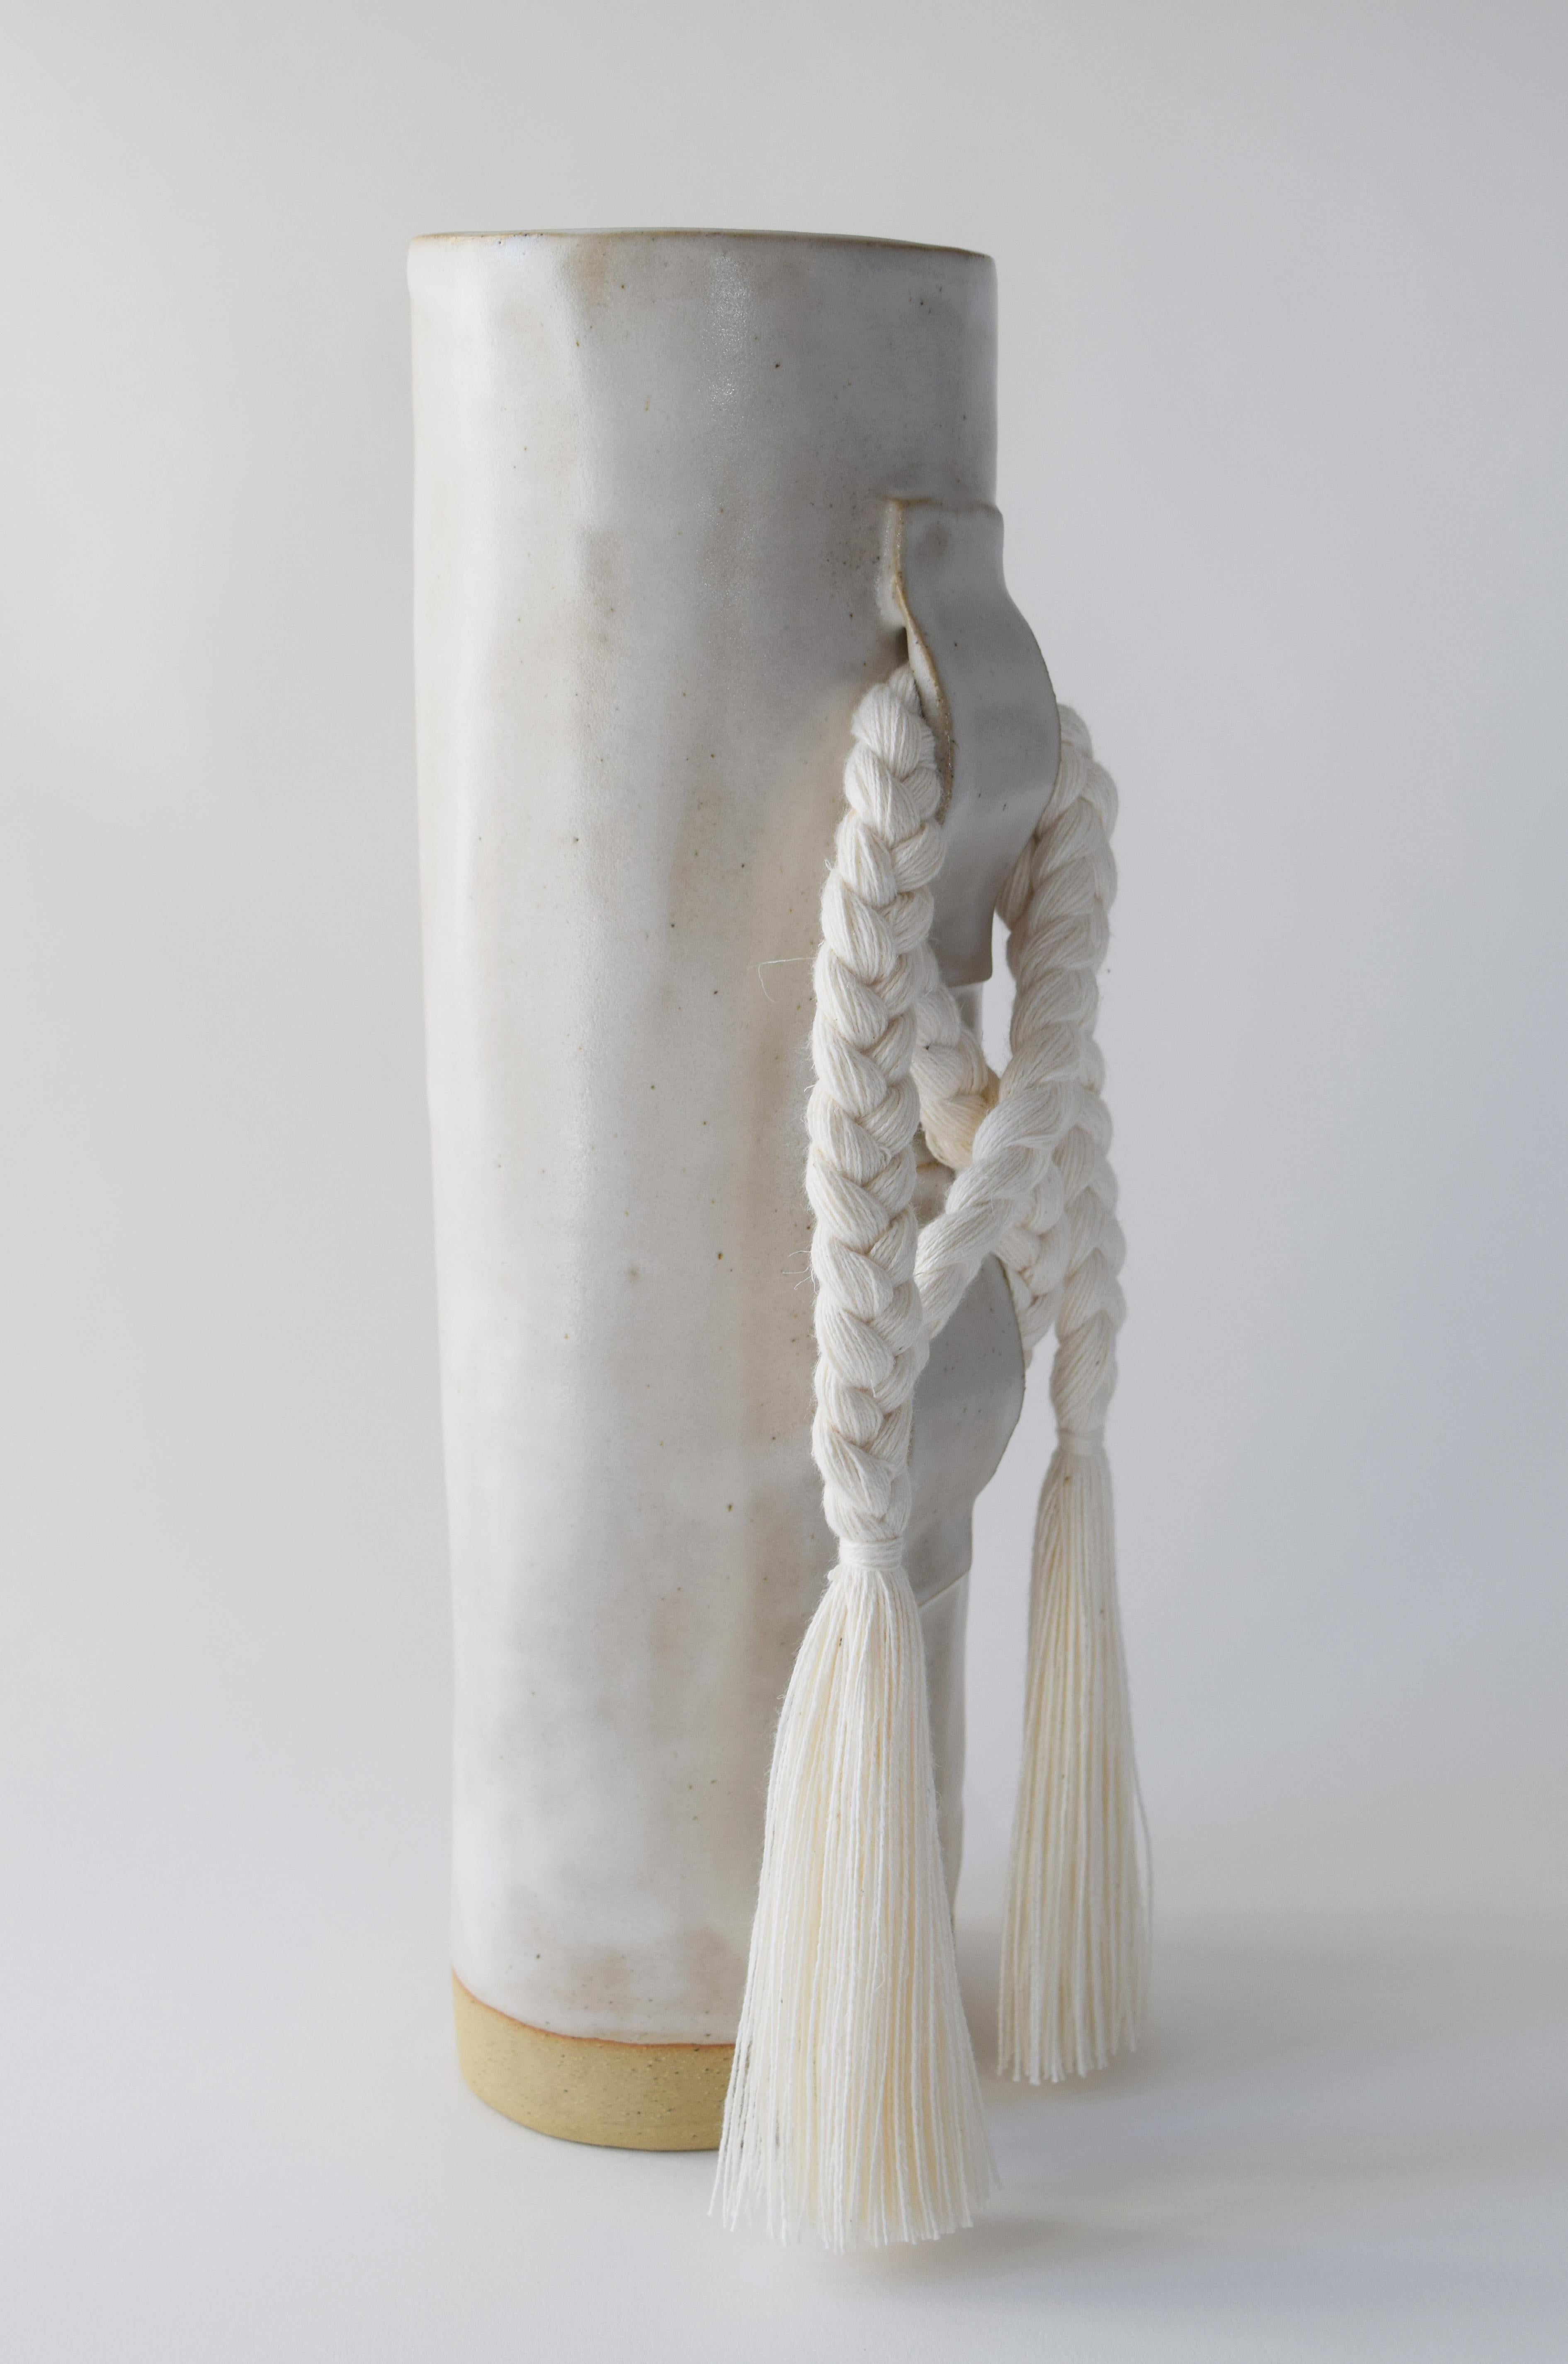 Vase #696 de Karen Gayle Tinney

Doté d'un grand nœud gestuel, ce vase s'inspire des détails tressés des sculptures murales uniques de Karen.

Grès formé à la main avec une glaçure blanche satinée. Détails en coton blanc tressé (la tresse est cousue